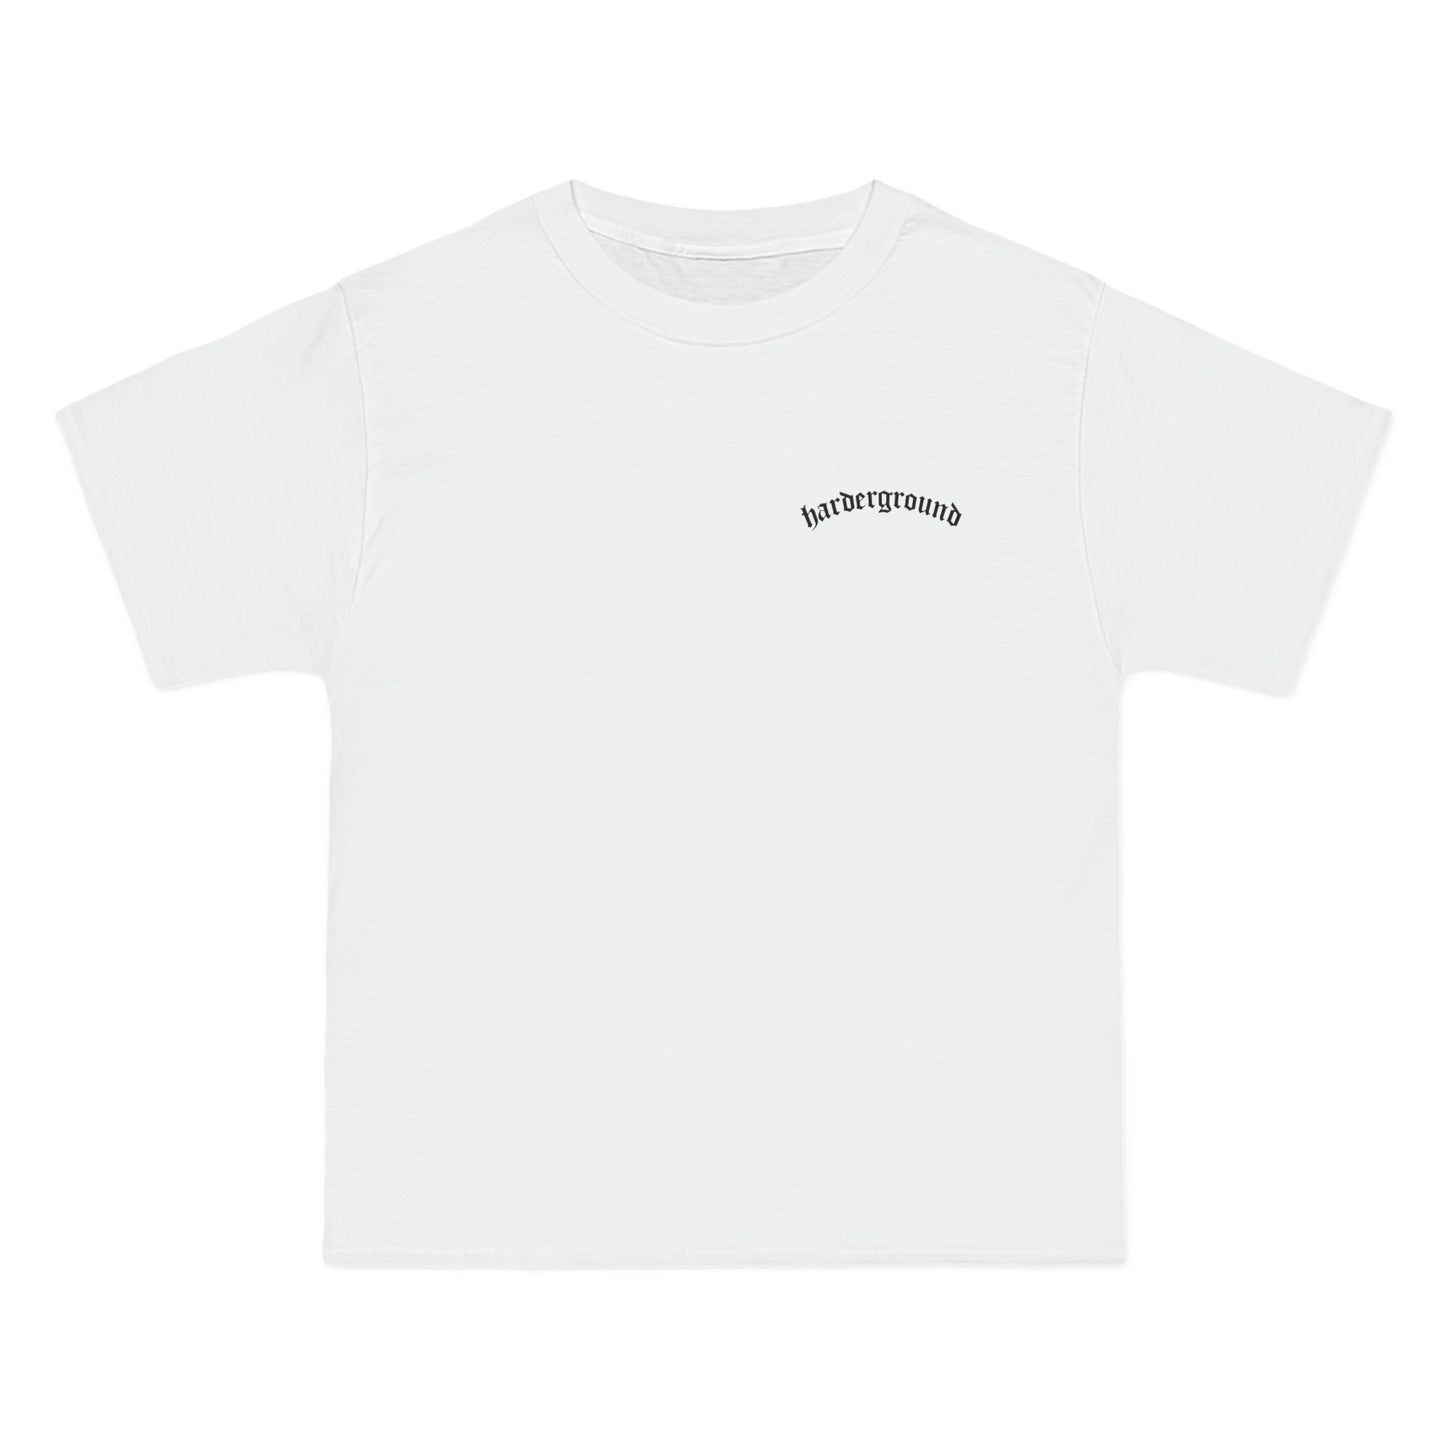 ARTE Harderground - Front & back logos - Beefy-T®  Short-Sleeve T-Shirt